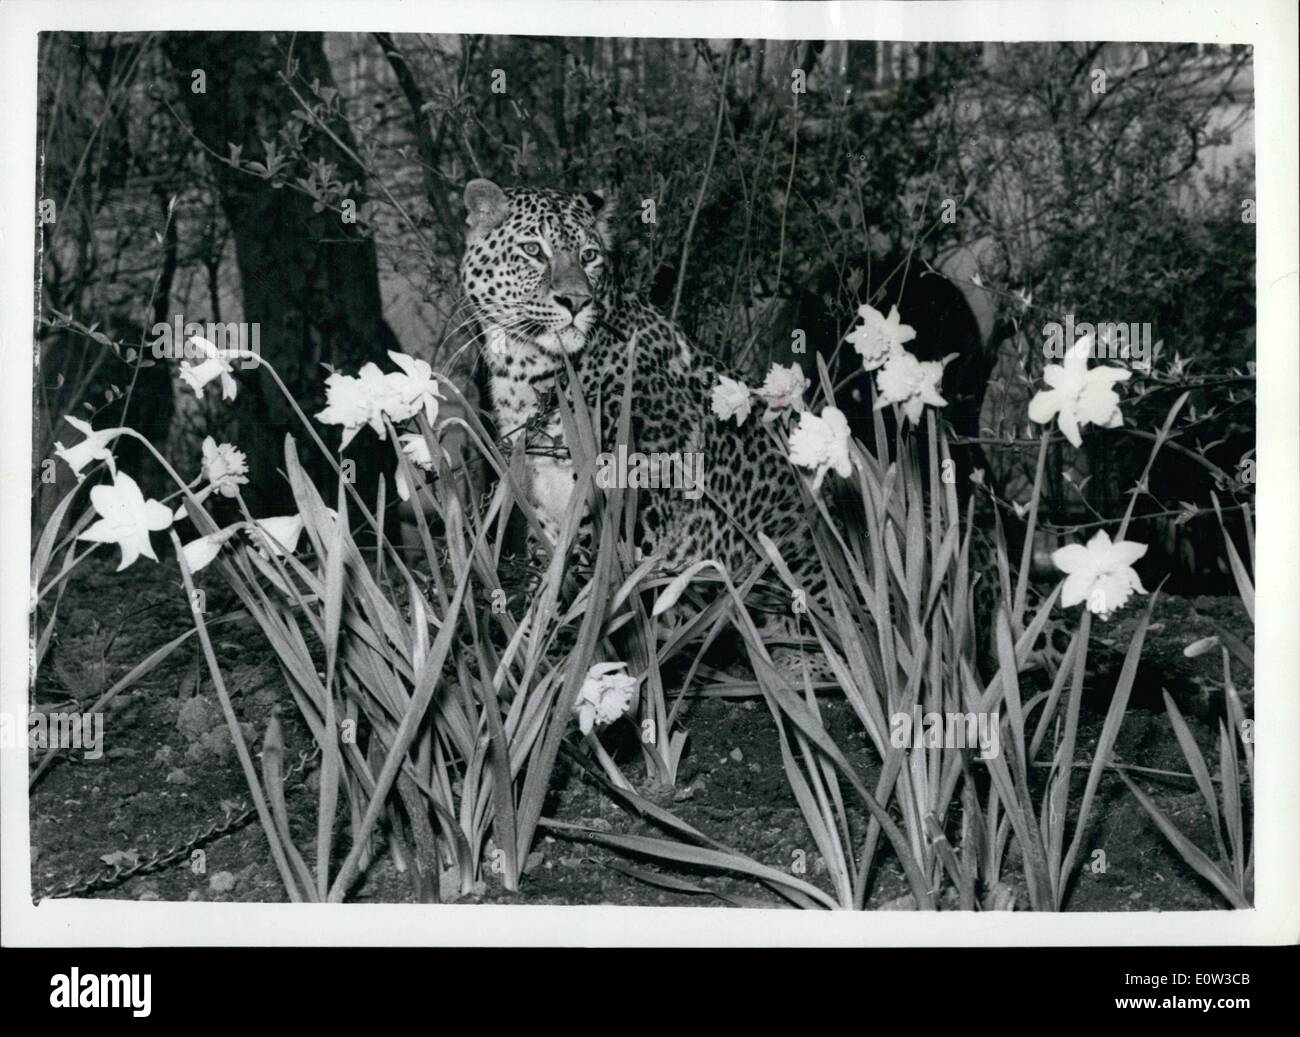 Mar. 03, 1961 - Les léopards et les jonquilles. : Richard Hudnut, a donné aujourd'hui un cocktail oarty au Savoy Hotel, à introduire certains de ses dernières lotions pour les cheveux, etc., qui ont des noms comme "Tiger Lily', 'Midnight Panther', 'Brown', etc, l'invité principal, même si elle n'est pas invité à la fête, a été 'Grand Chef', un bruit horrible leopard taille adulte. La photo montre la 'Big chief bruit horrible", est représentée dans l'Embankment Gardens avec un avant-plan de jonquilles au printemps. Banque D'Images